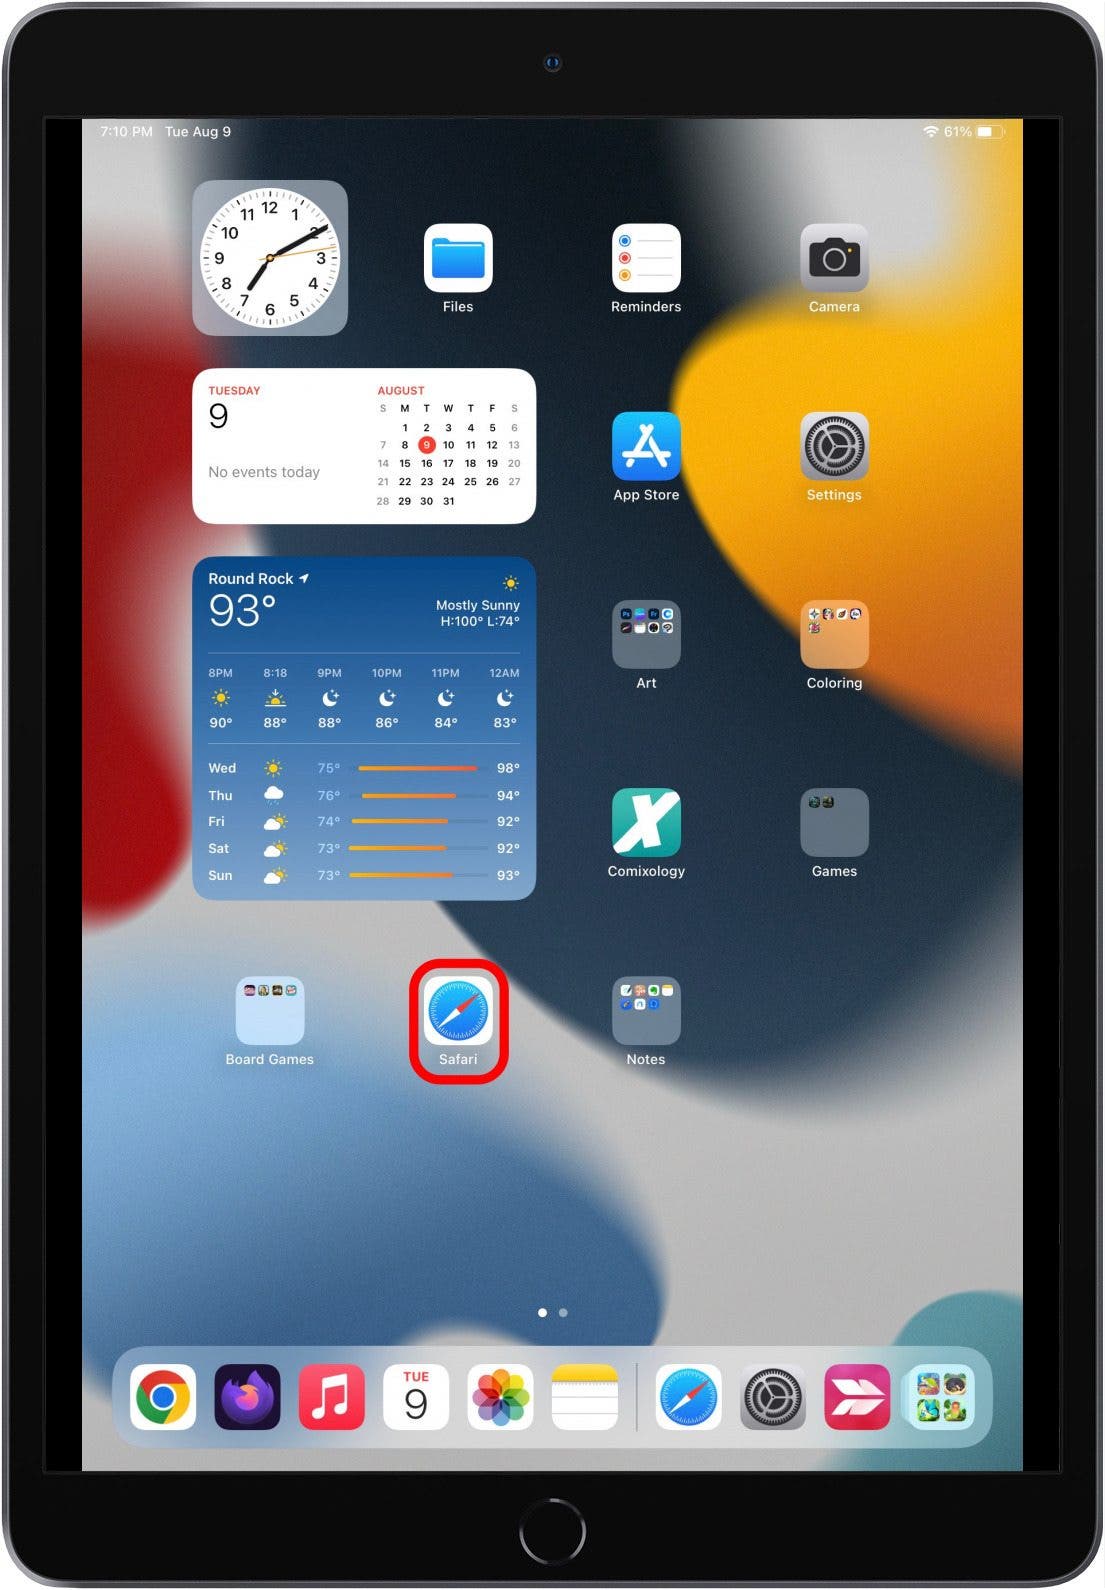 Pantalla de inicio del iPad con el icono de la aplicación Safari marcado.